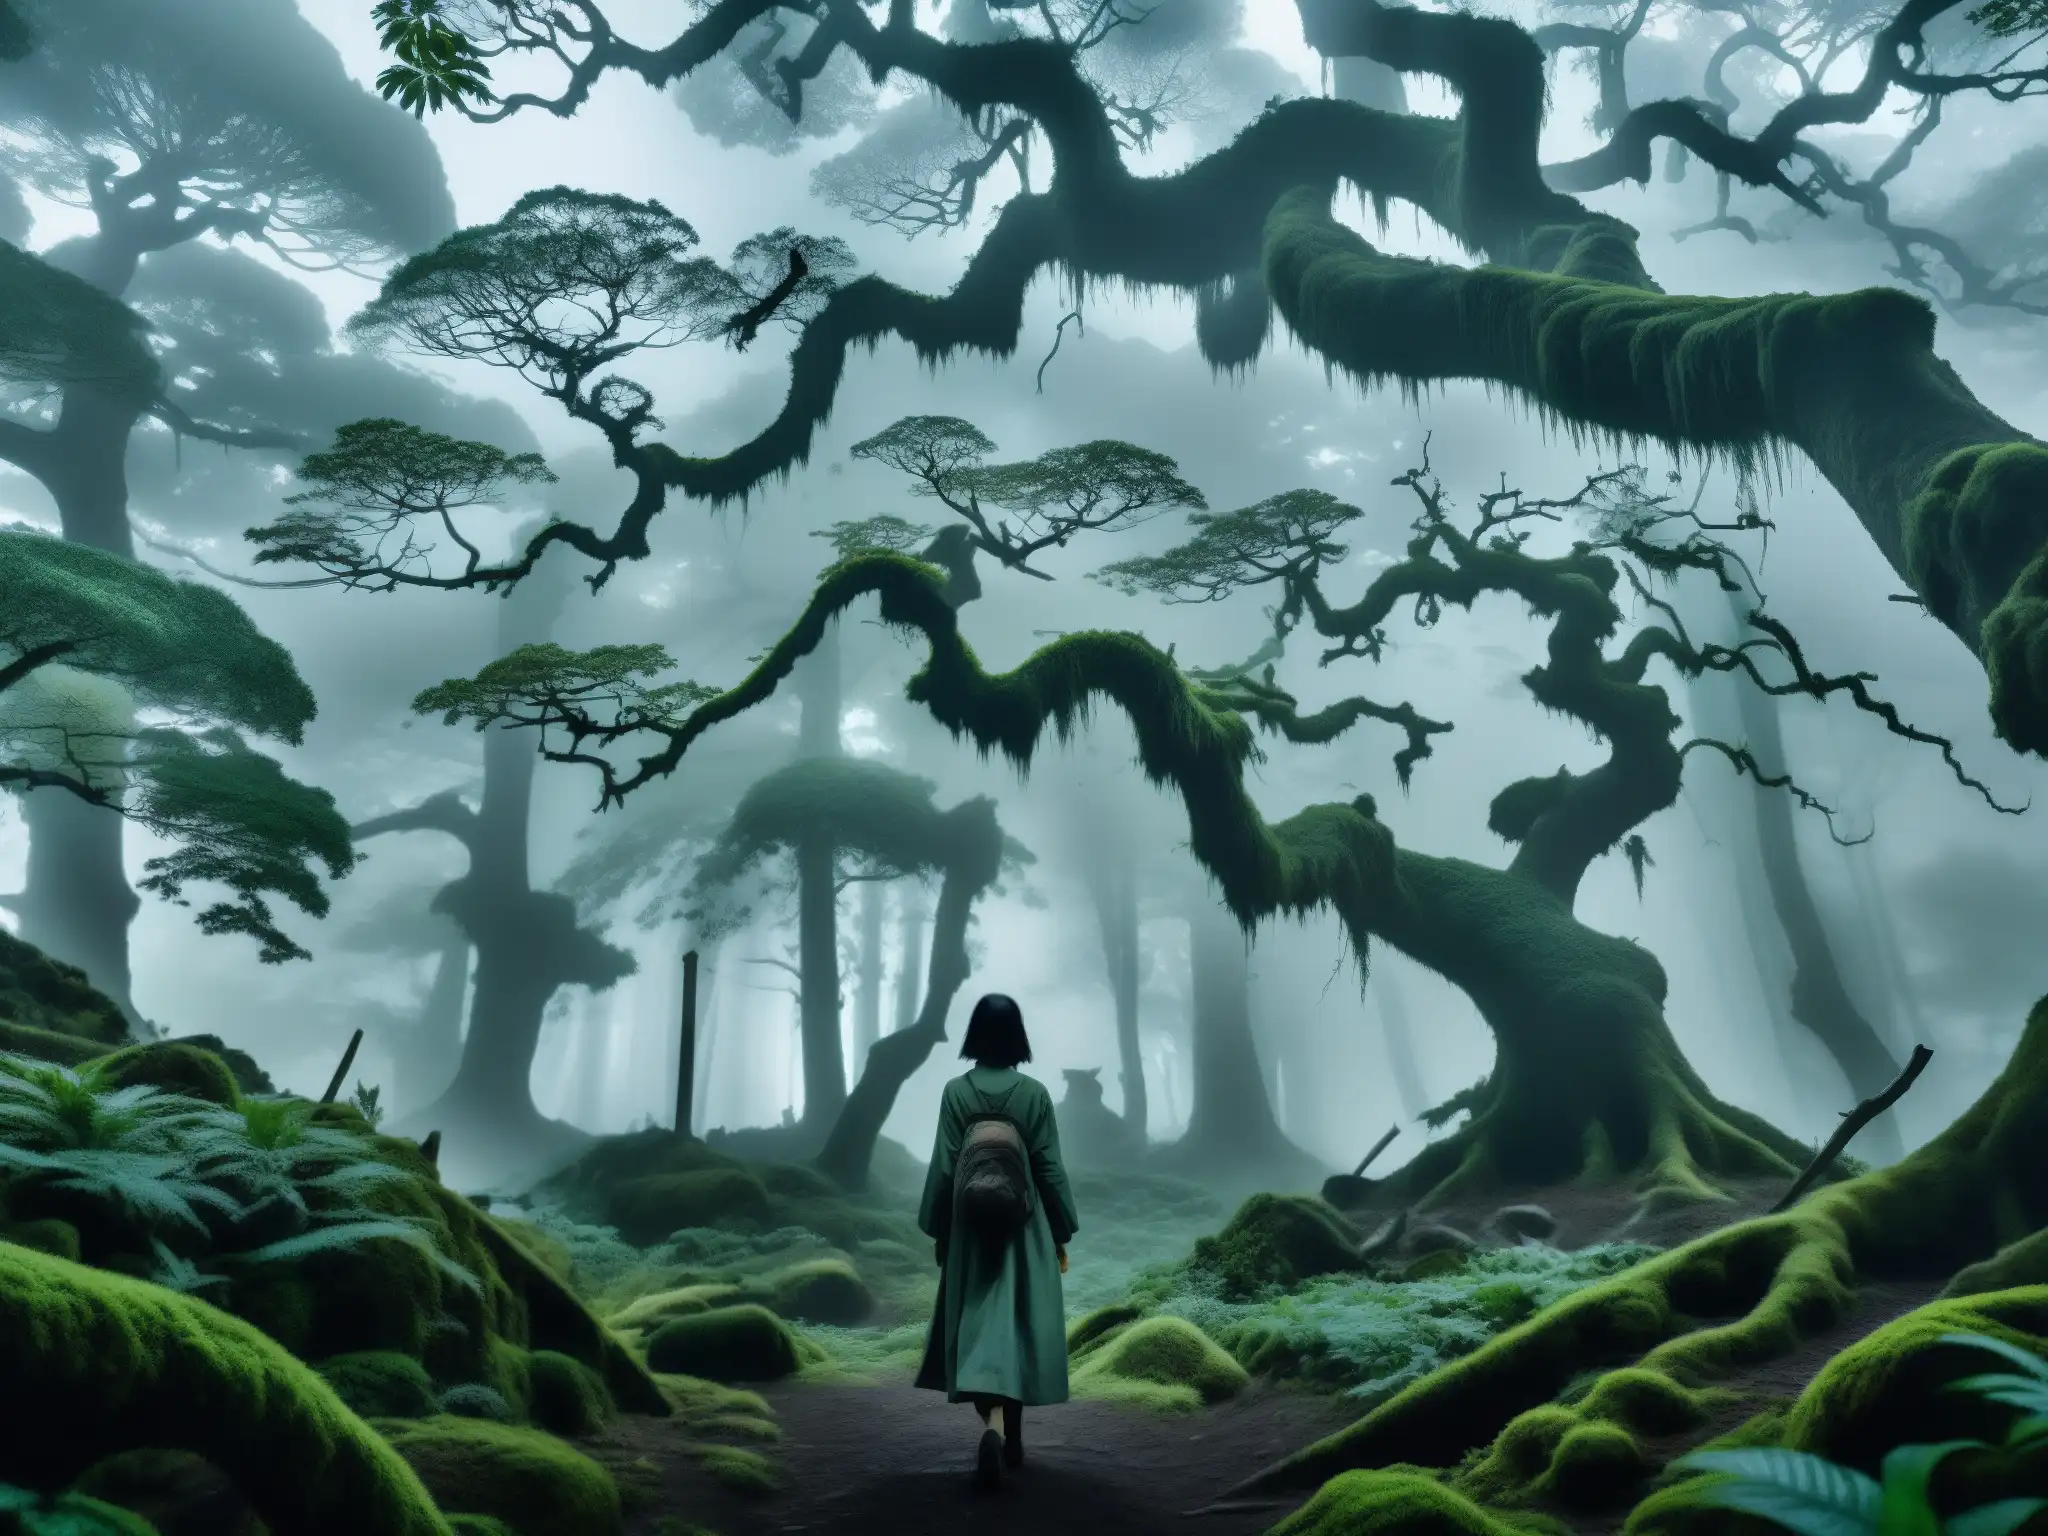 Misterioso bosque japonés con neblina y la Jorogumo, leyenda araña mujer Japón, evocando una atmósfera inquietante